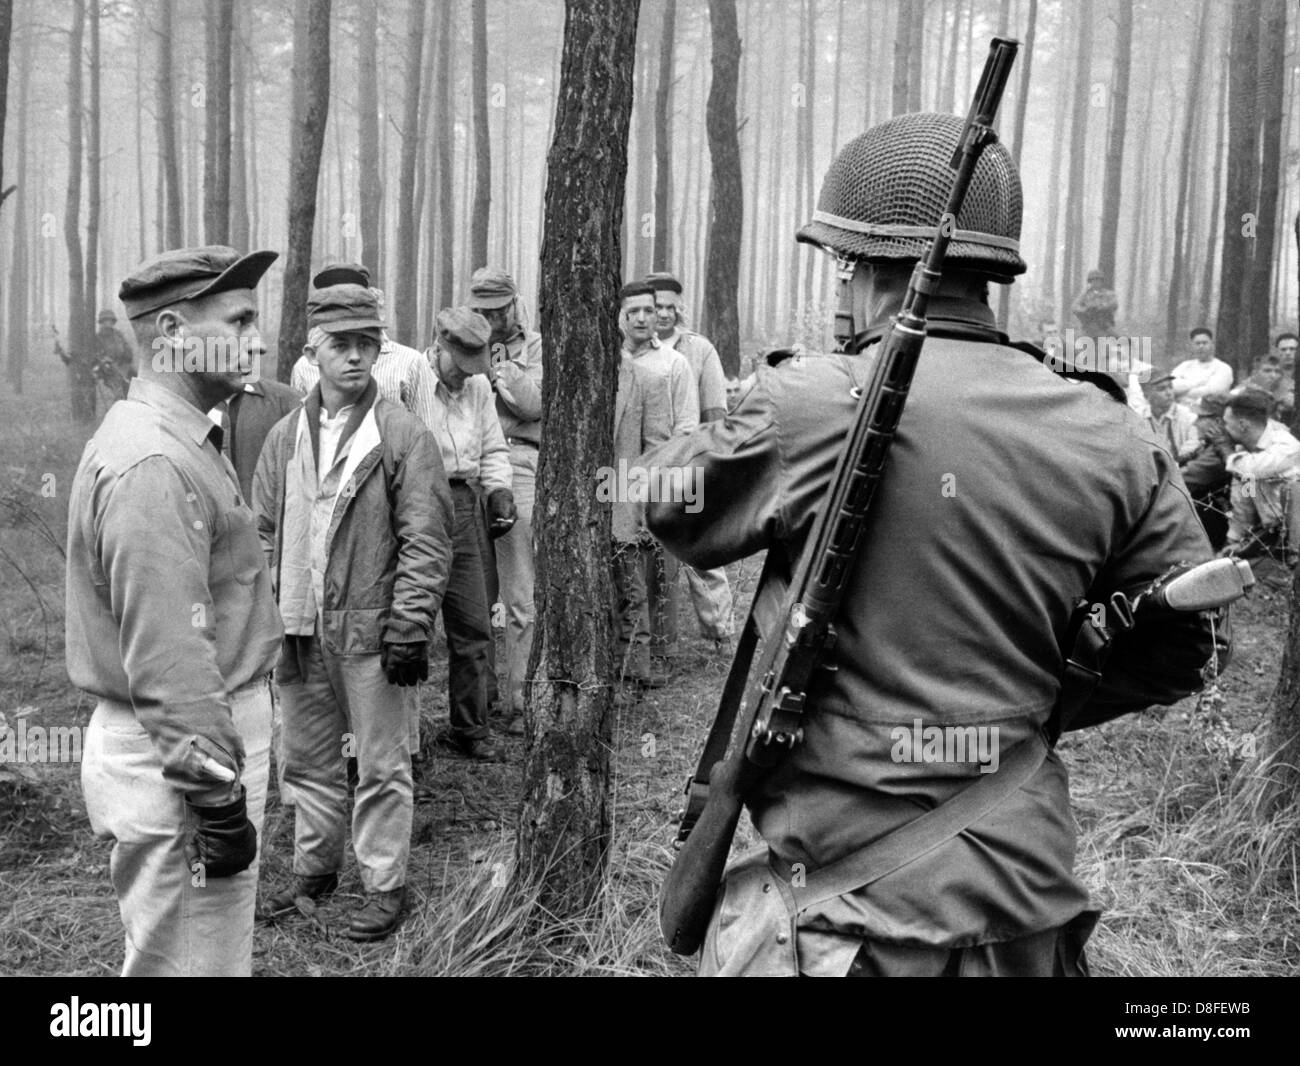 Amerikanische Soldaten, gekleidet als Zivilisten, fungieren als angreifende Gruppe während eines kämpfenden Trainings am 24. Oktober 1962 in Grundwald in Berlin. In diesem Fall wirken sie als verhafteten verdächtigen, die abgefragt werden sollen.  Die Übung war Bestandteil einer viertägigen Manöver der US-Truppen. Stockfoto